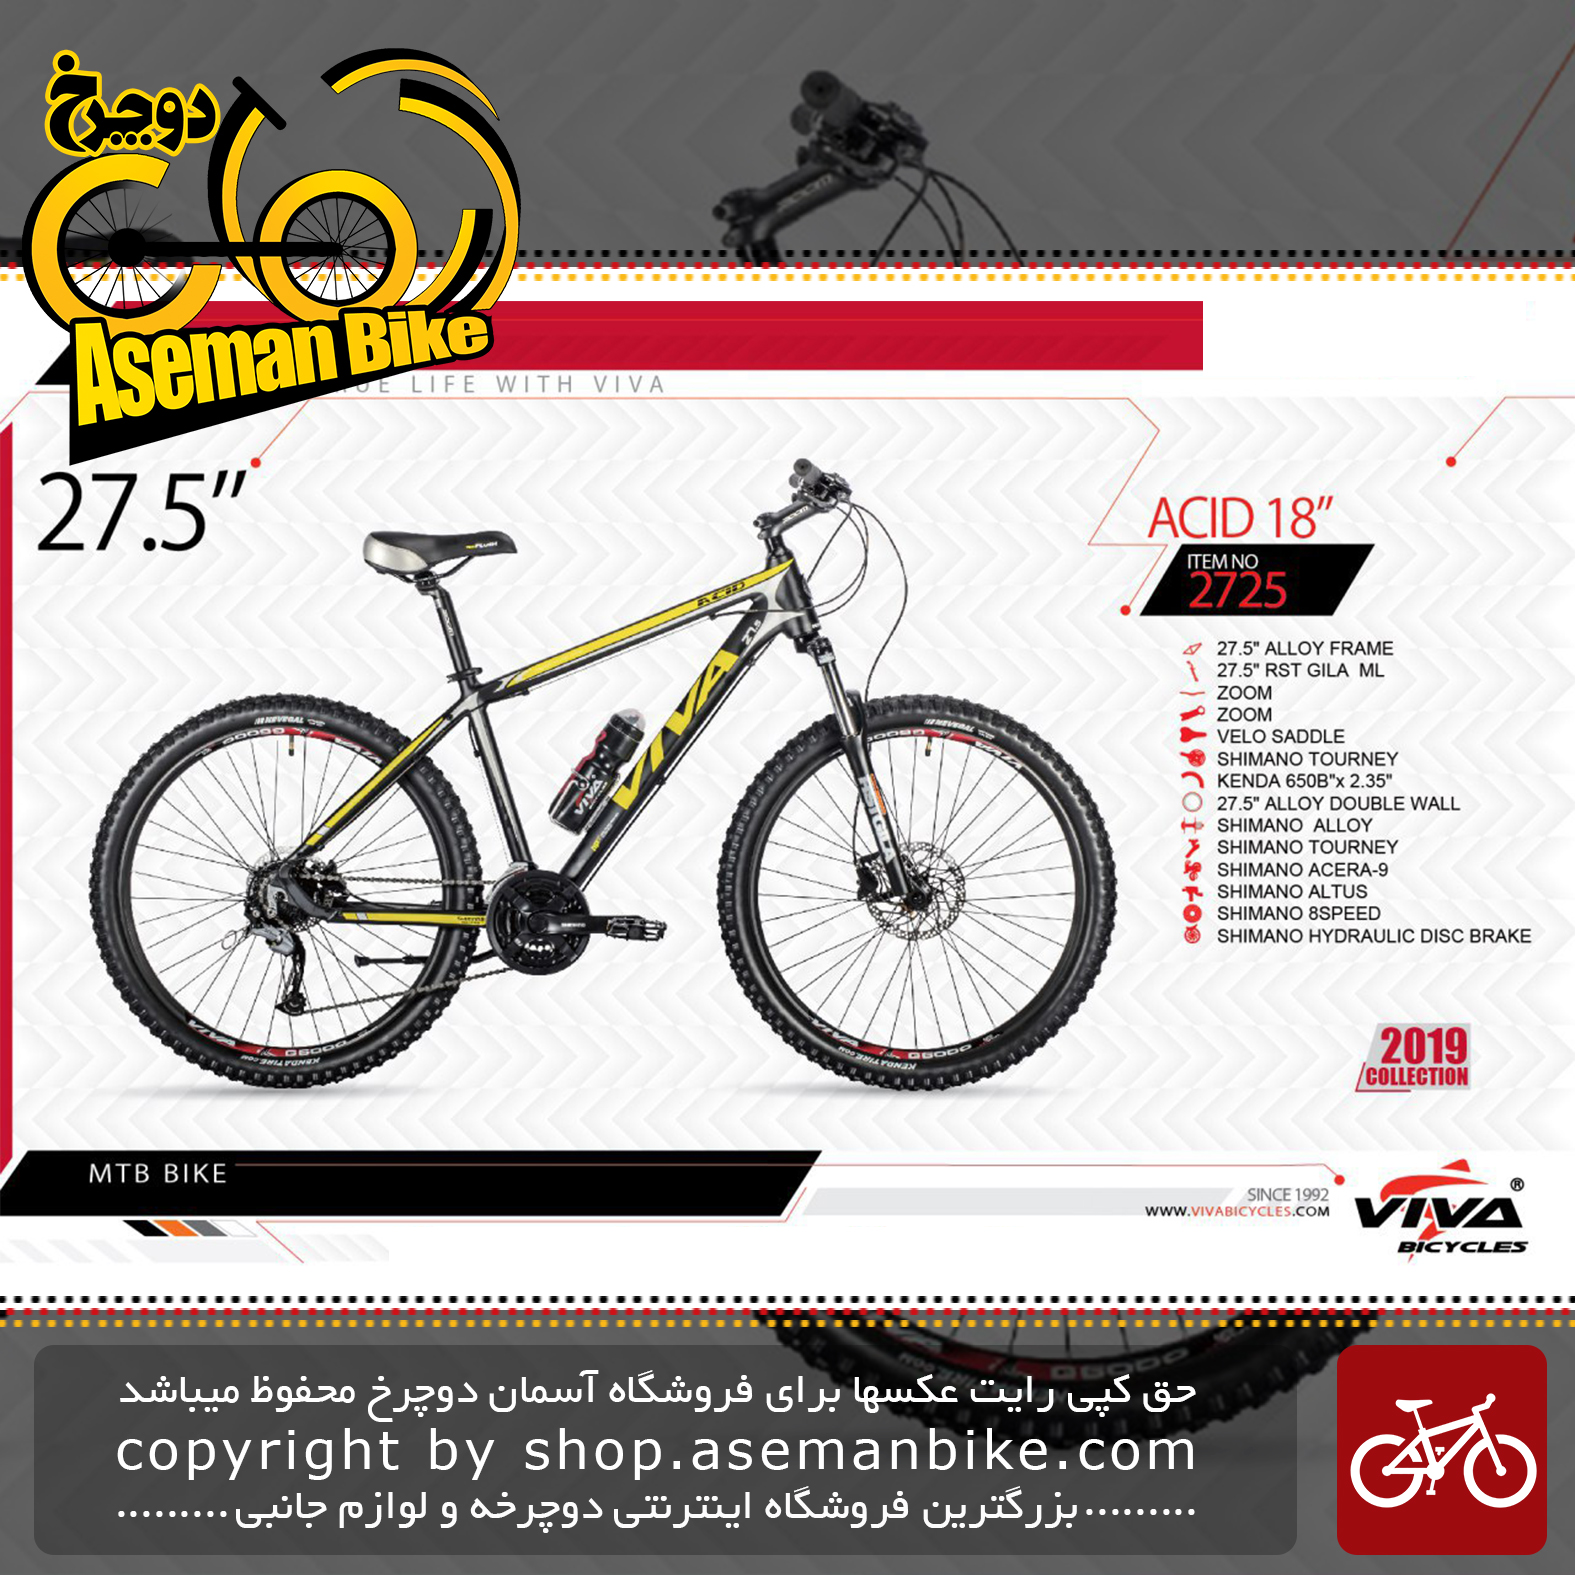 دوچرخه کوهستان سایز 27.5 ویوا مدل اسید 18 24 دنده شیمانو آسرا دوشاخ قفل کن دار آر اس تی ترمز دیسک هیدرولیک روغنی Viva Bicycle ACID 18 SIZE 27.5 2019 